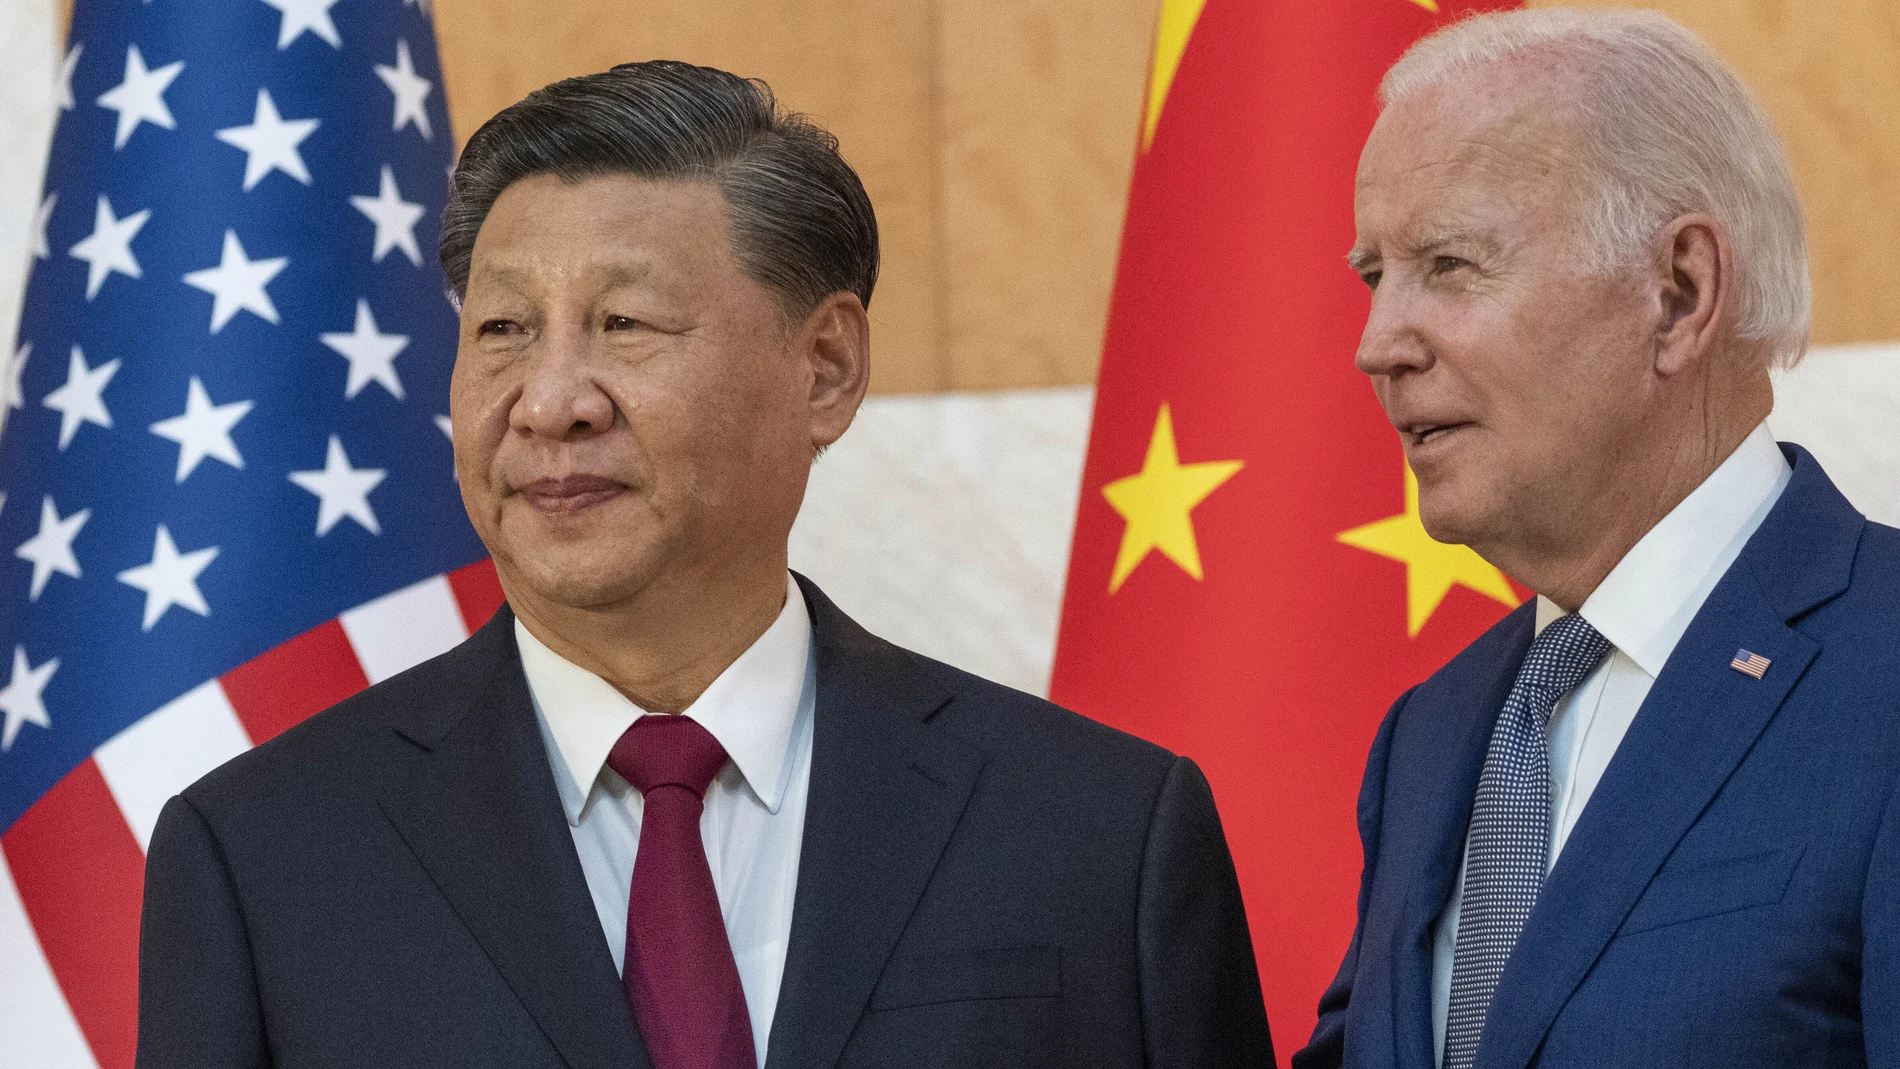 El presidente de Estados Unidos, Joe Biden, a la derecha, junto al presidente chino, Xi Jinping, antes de una reunión al margen de la cumbre del G20